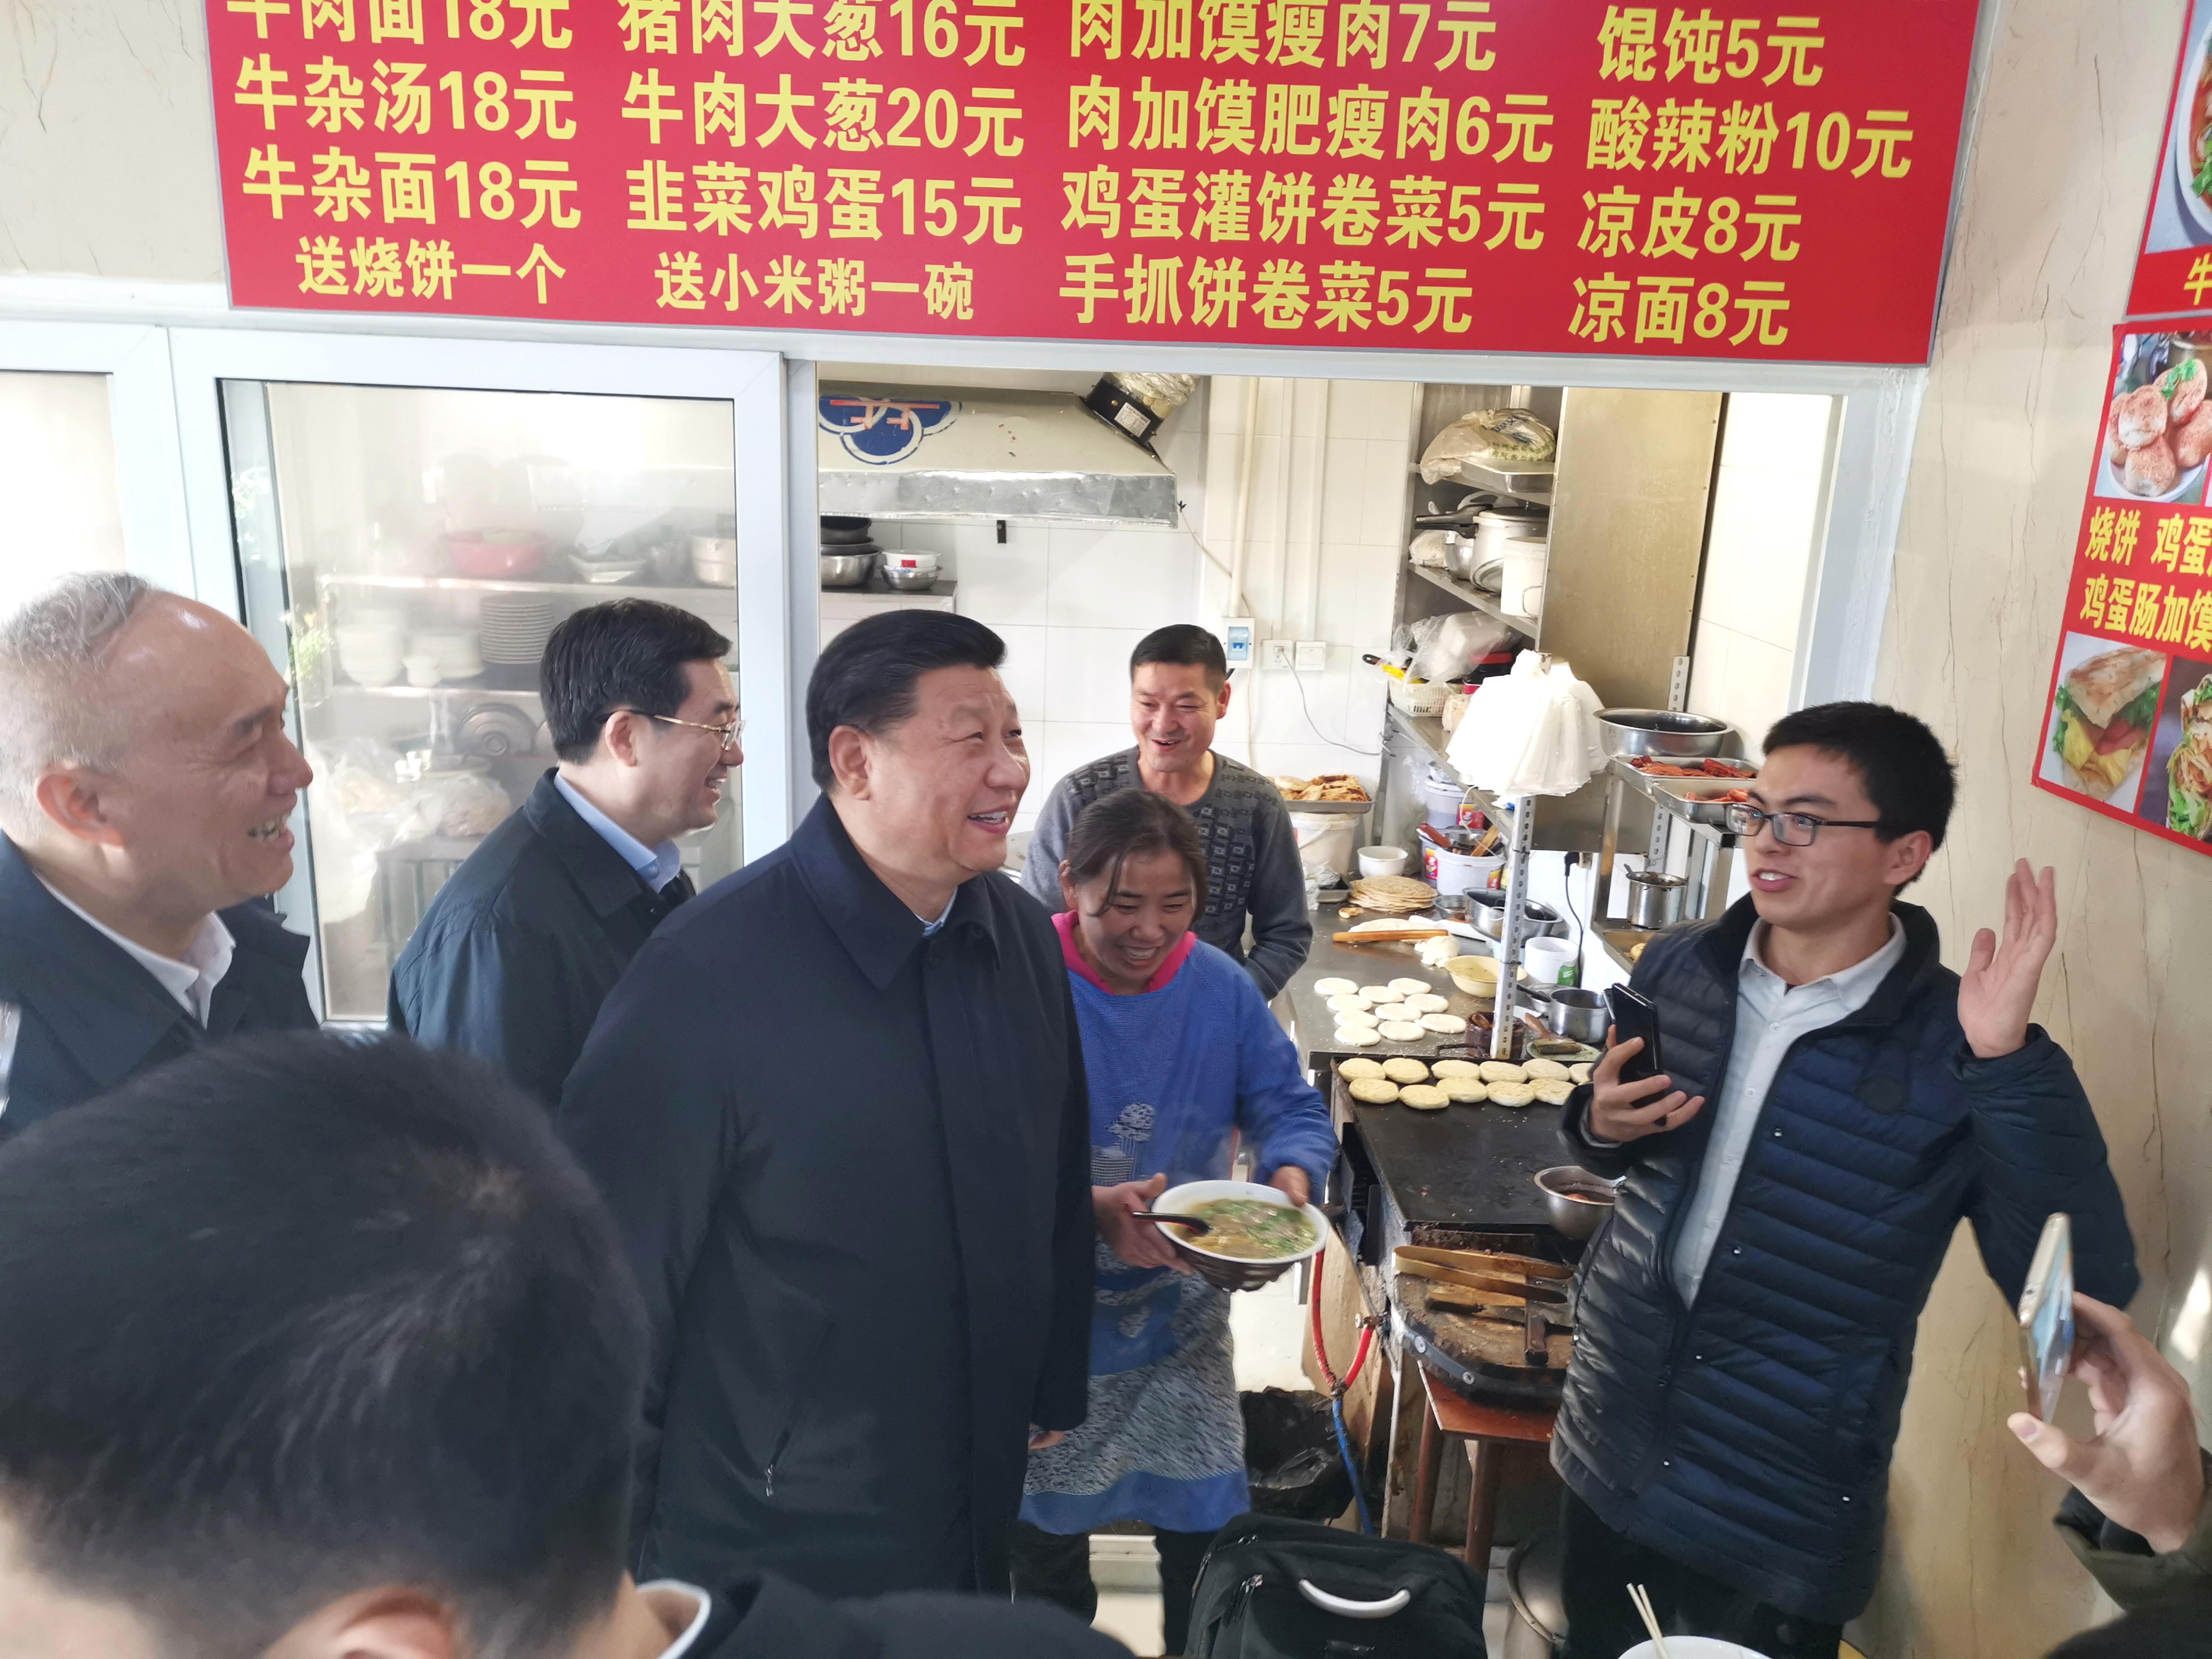 2019年2月1日，农历腊月二十七，习近平走进位于北京前门石头胡同的小吃店，看望仍在工作的劳动者，了解他们工作和生活情况。